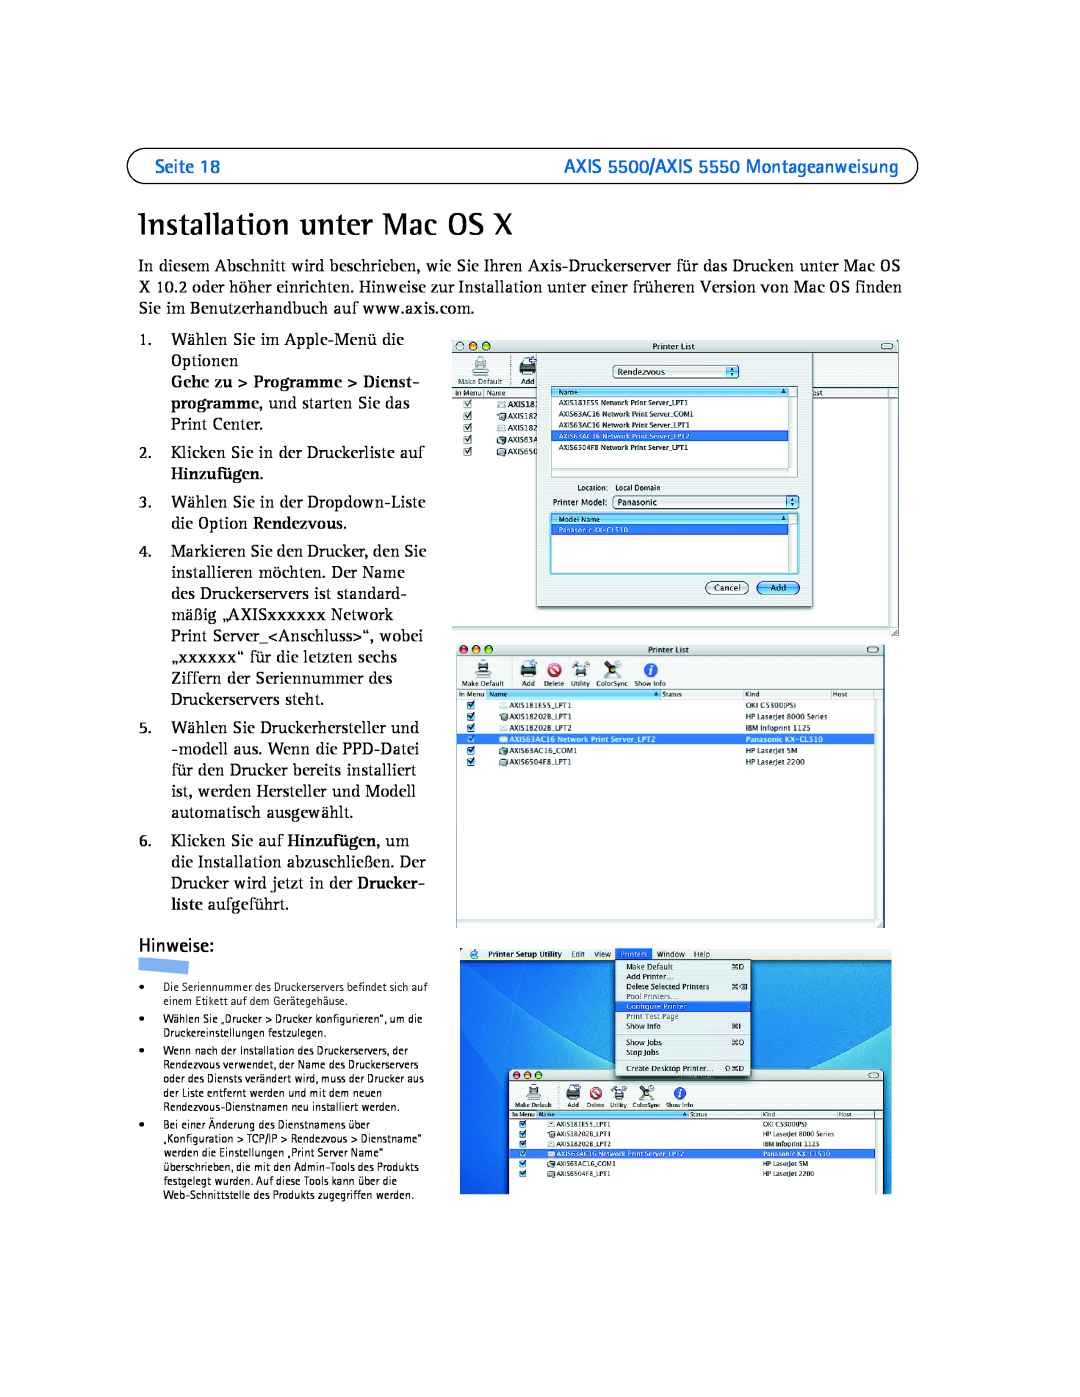 Axis Communications AXIS 5500 manual Installation unter Mac OS, Seite, Hinweise, 1. Wählen Sie im Apple-Menü die Optionen 